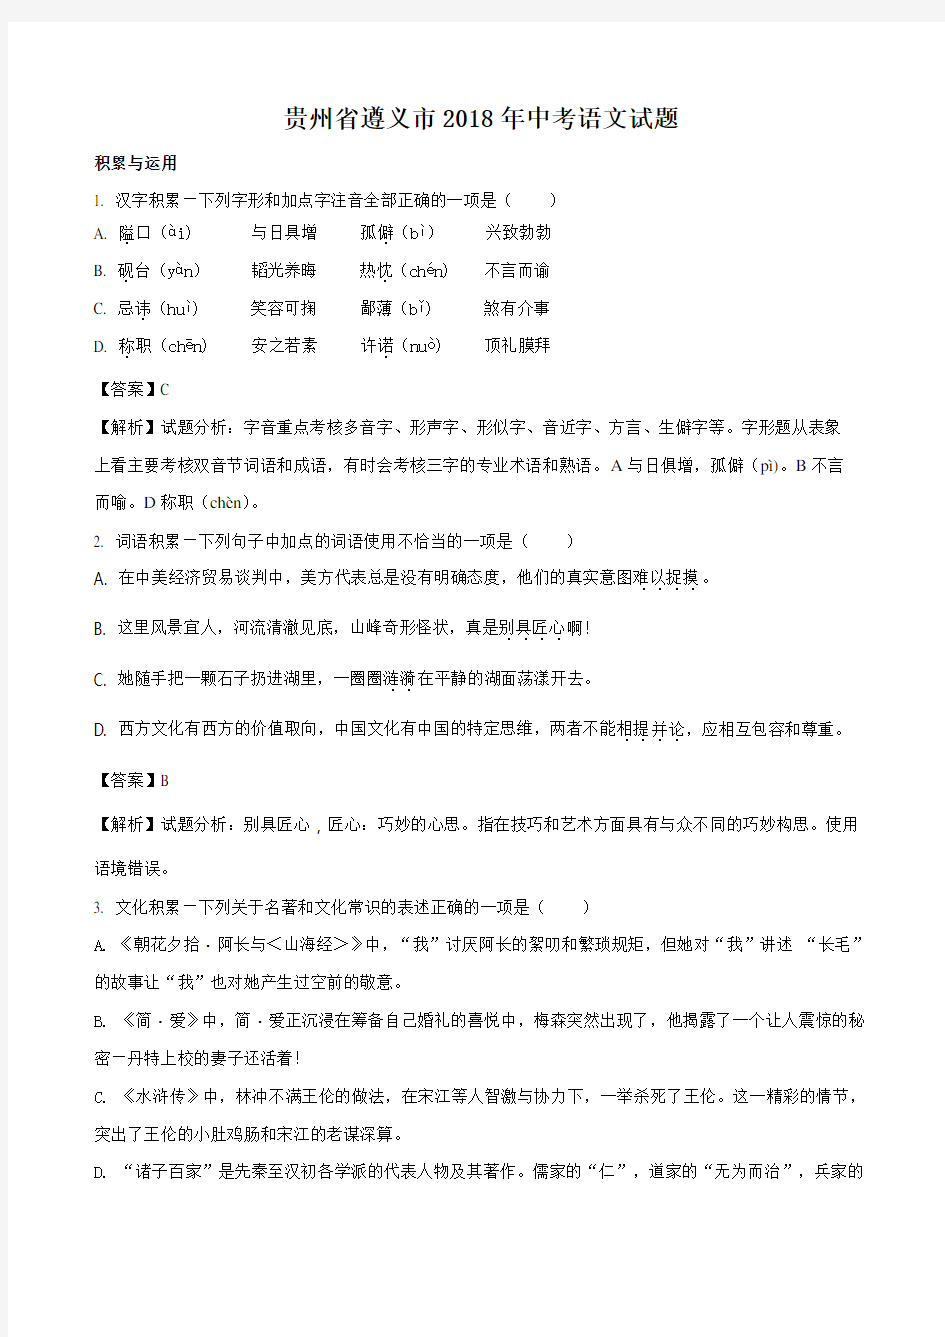 【中考真题】 贵州省遵义市2018年中考语文试题(解析版)